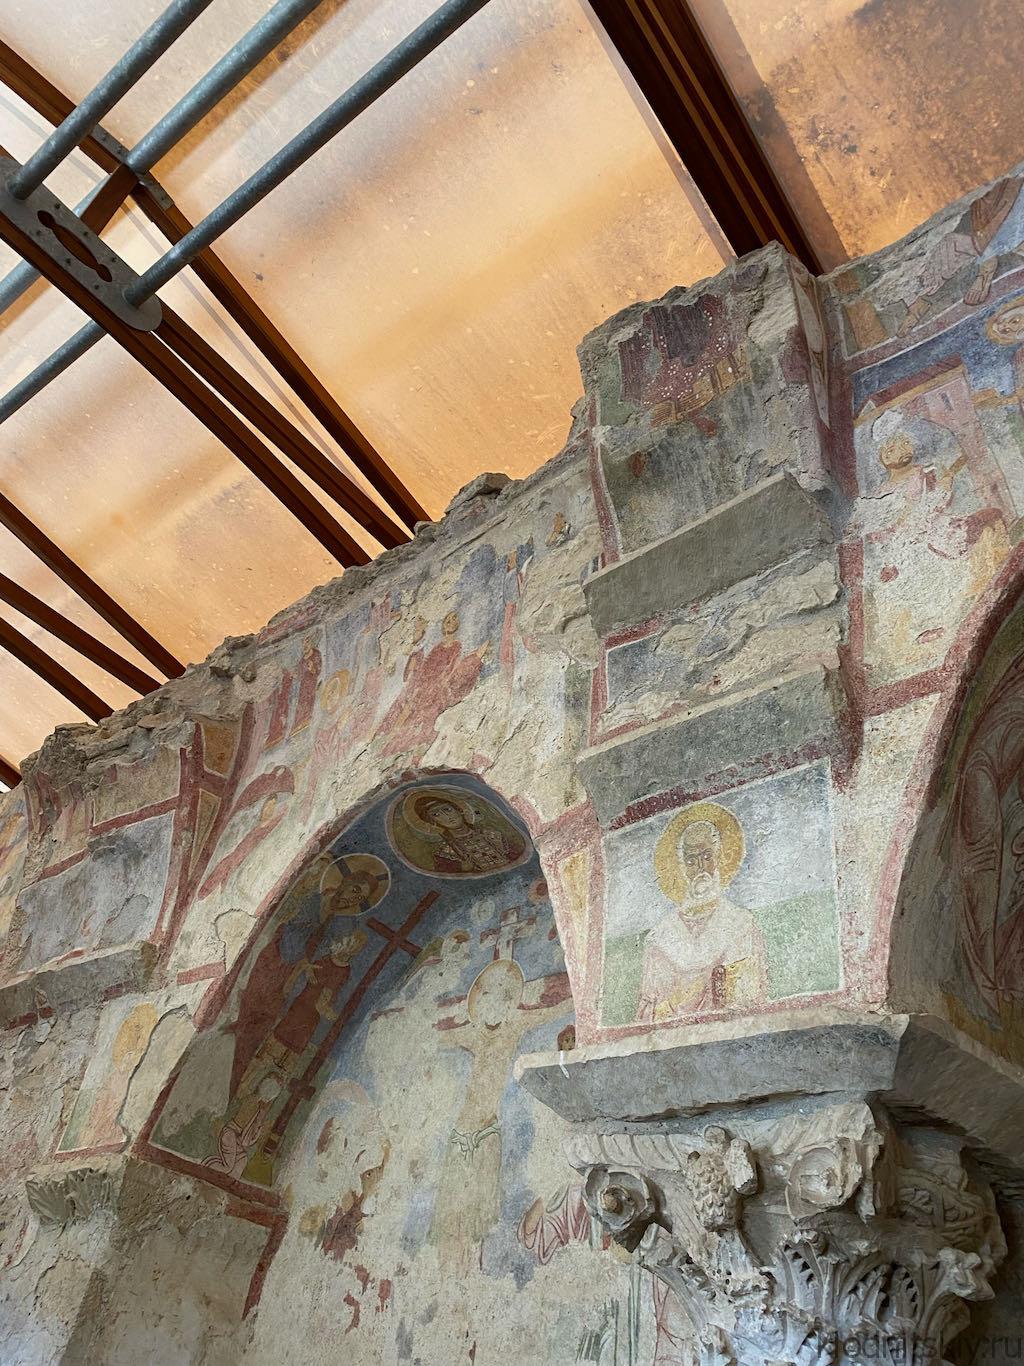 Турция, Кемер - церковь Святого Николая Чудотворца в Демре